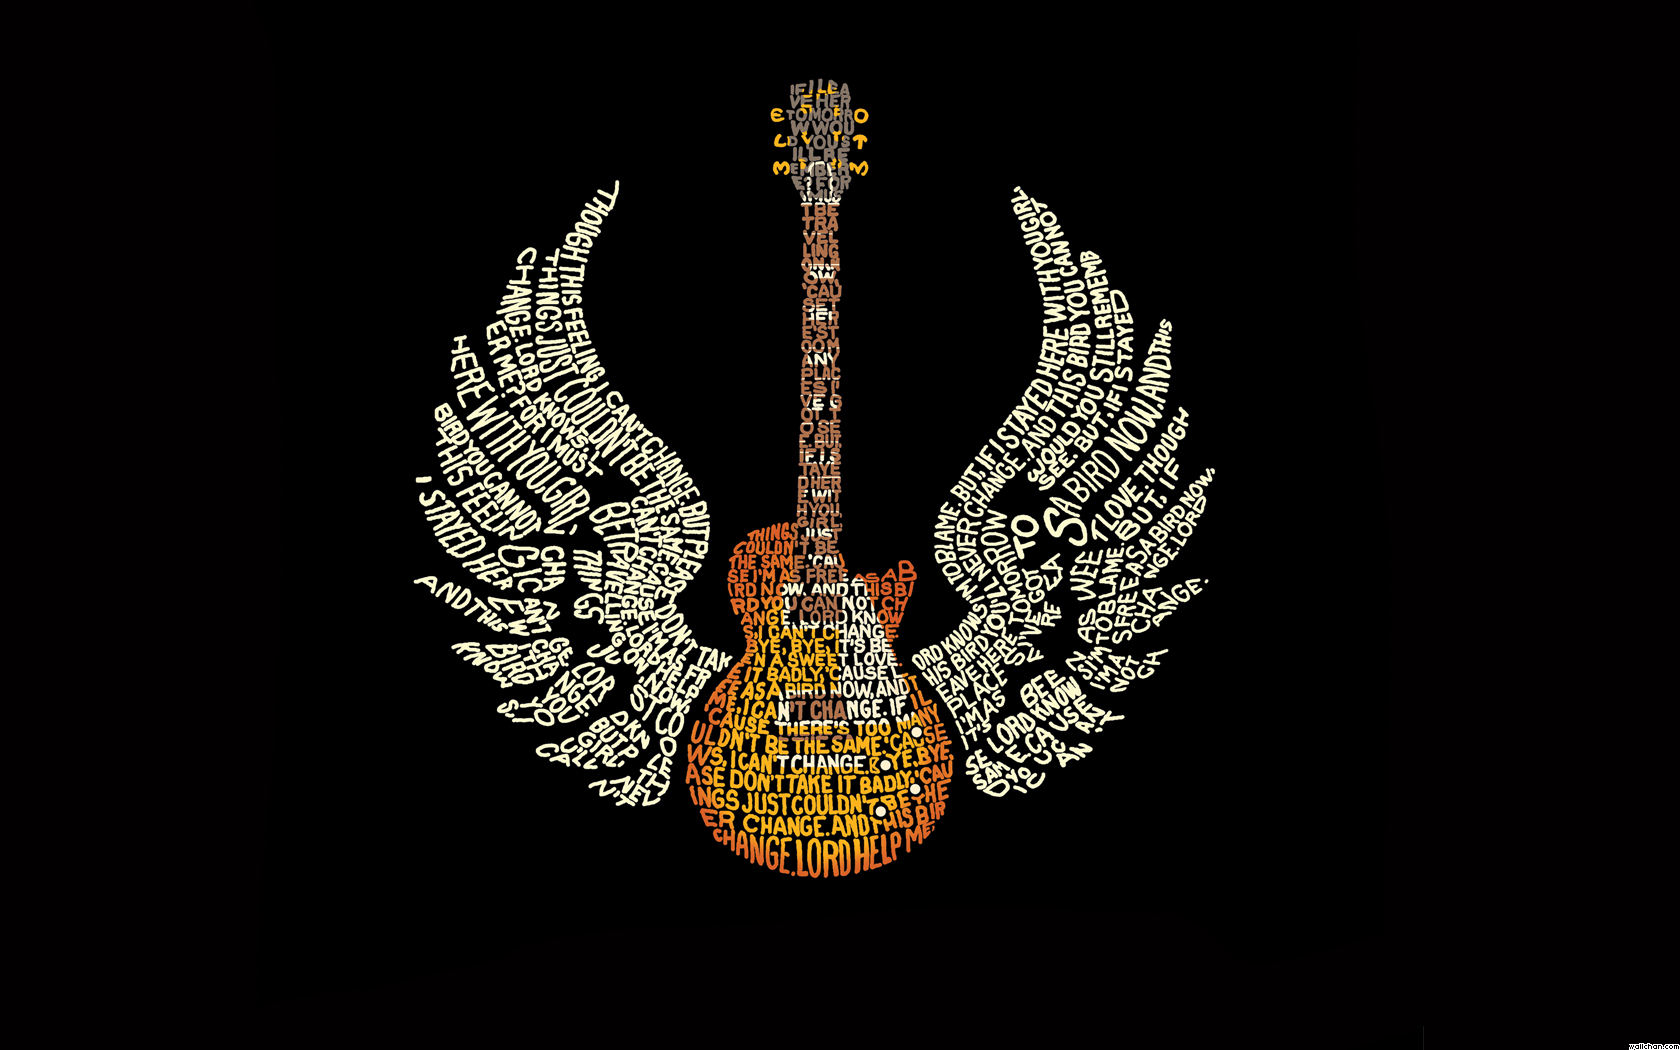 guitar wallpaper